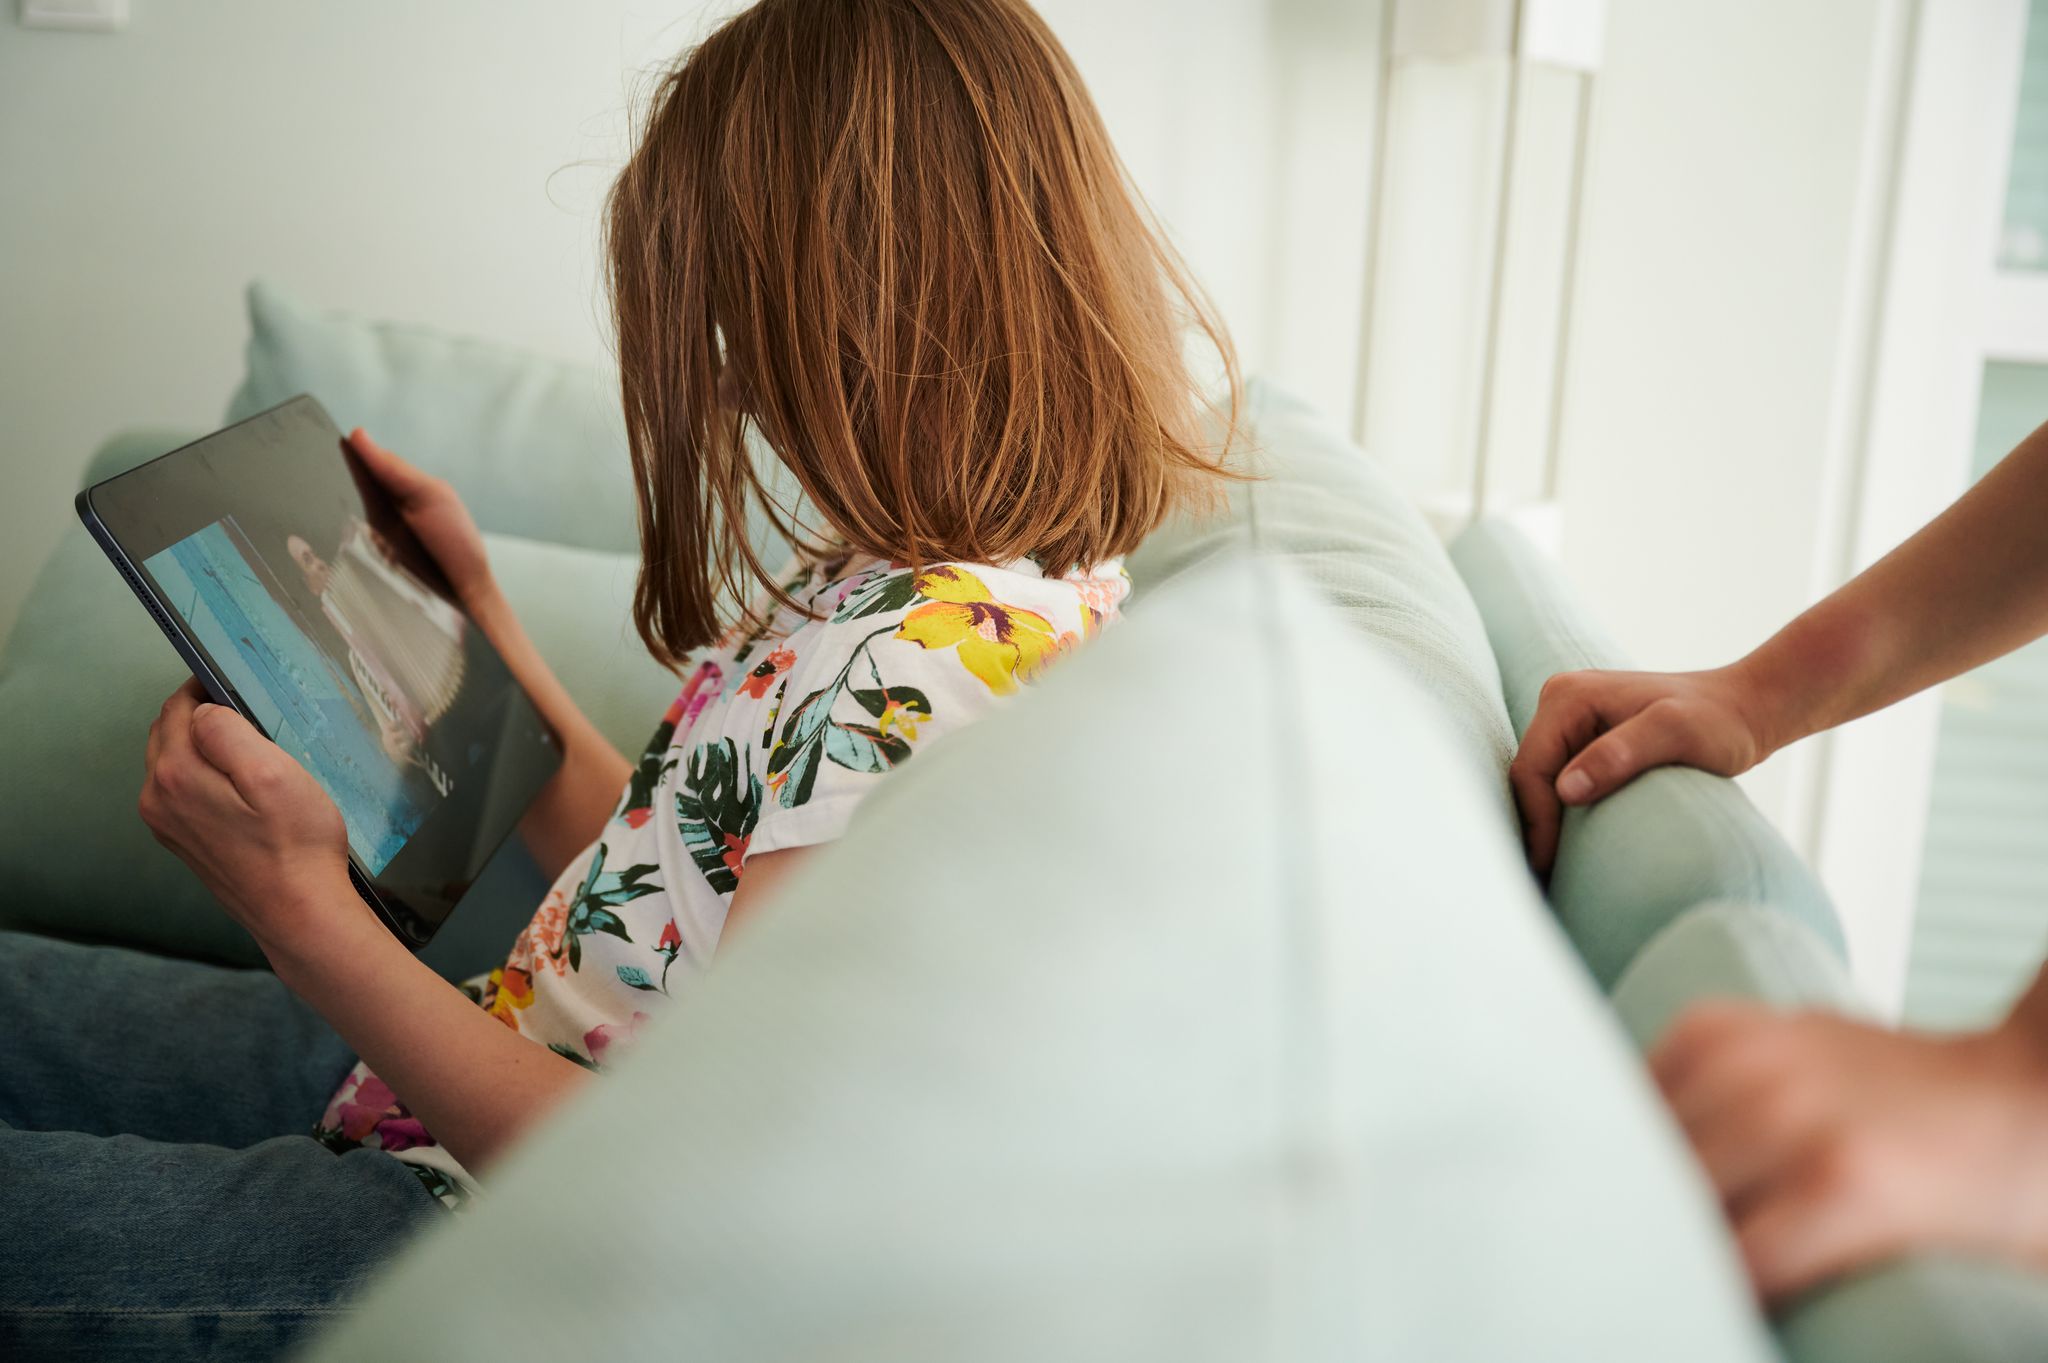 Eltern beeinflussen die Bildschirmzeit ihrer Kinder: Eine Studie zeigt, dass elterliches Verhalten und die Art der Kommunikation über Bildschirmnutzung eng mit dem Medienverhalten ihrer Kinder verknüpft sind.